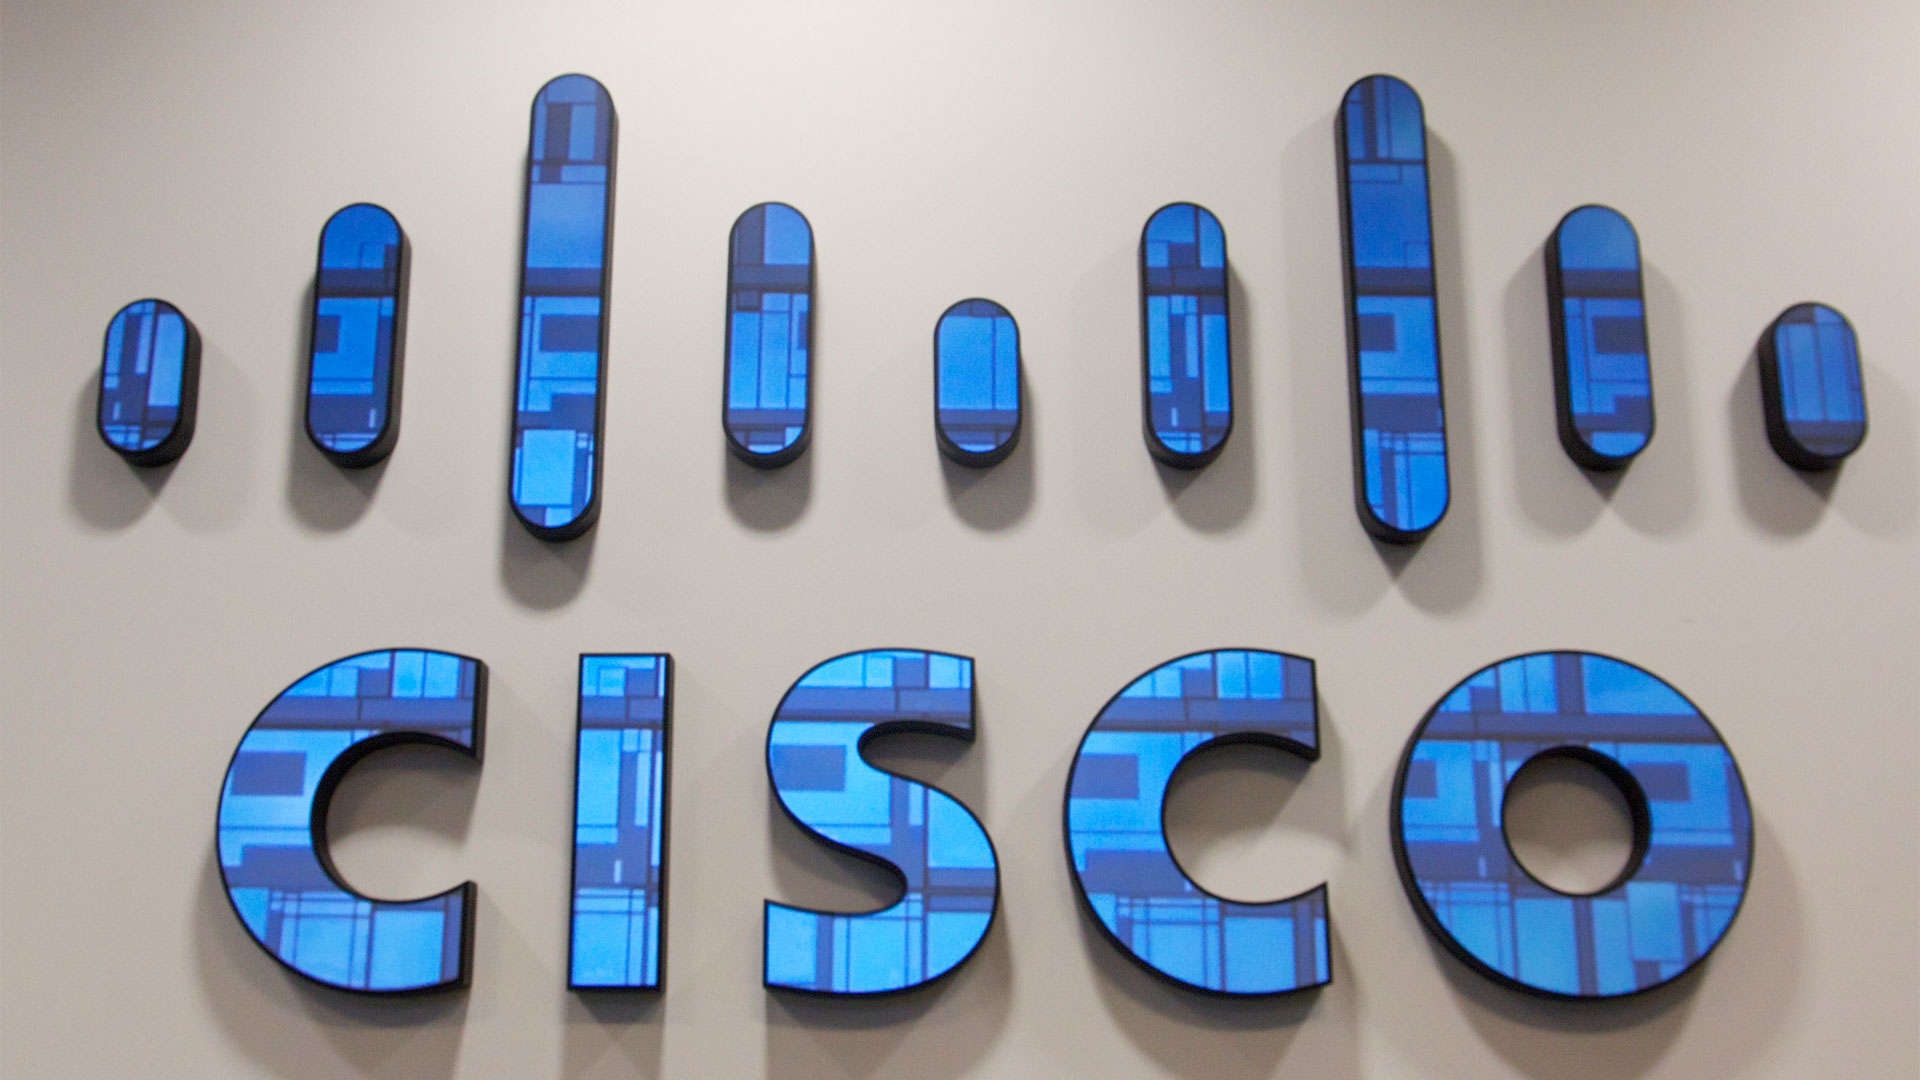 Cisco Wallpapers